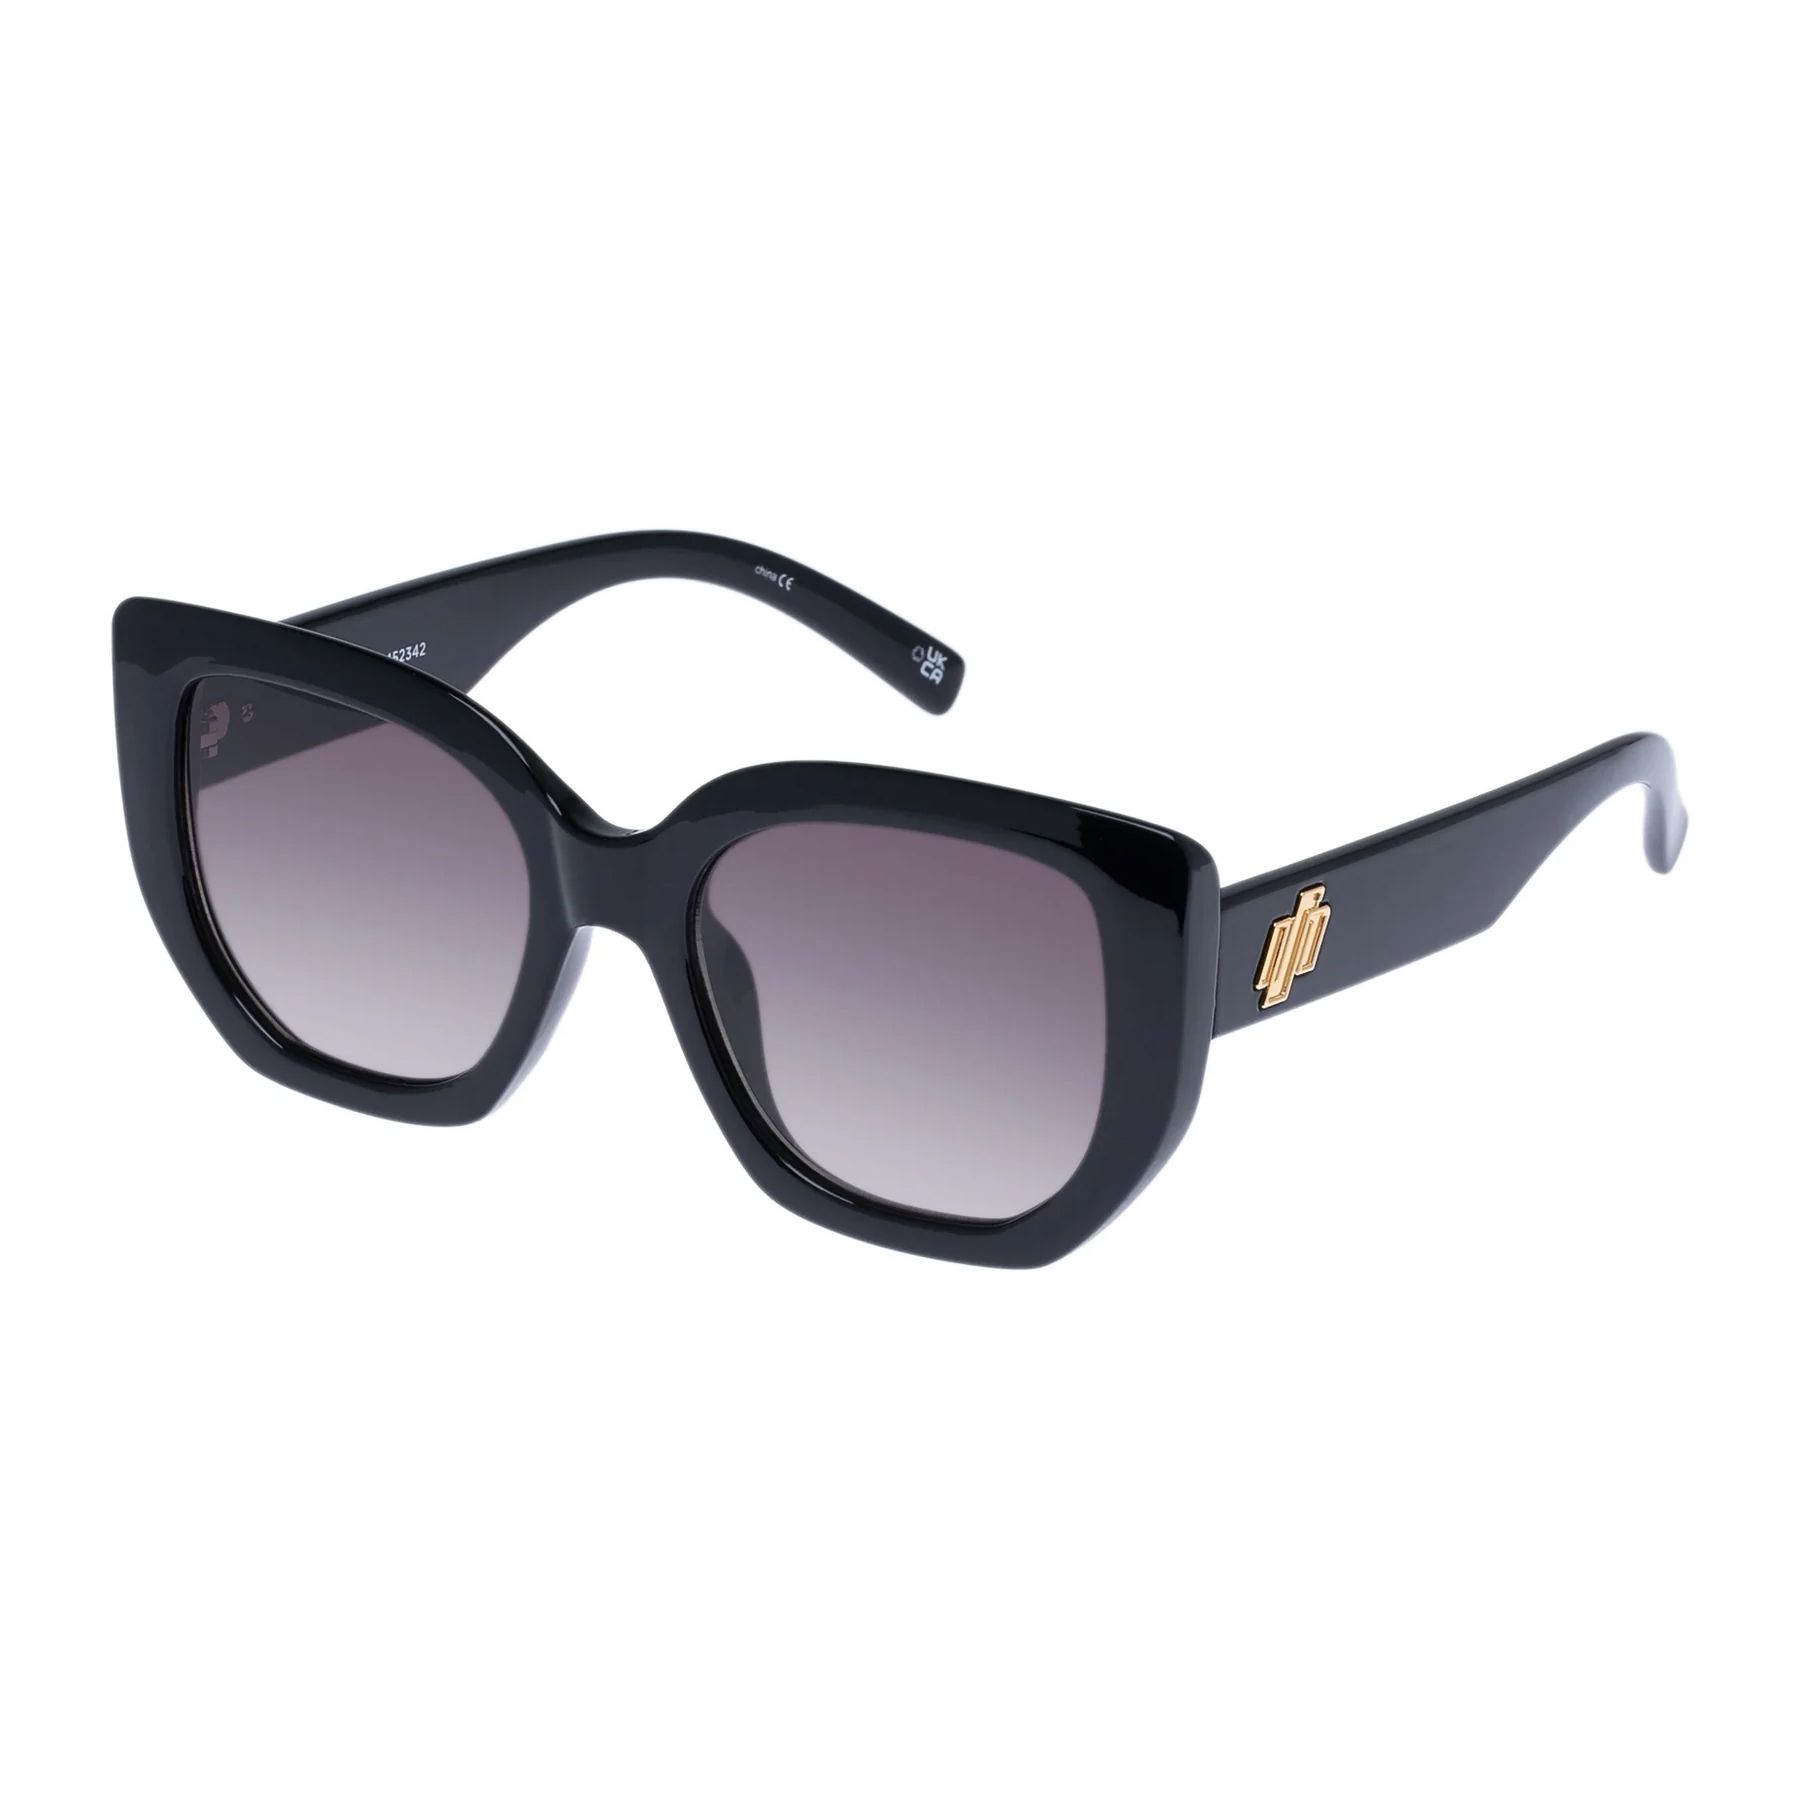 EUPHORIA Square Sunglasses BLACK - size 52